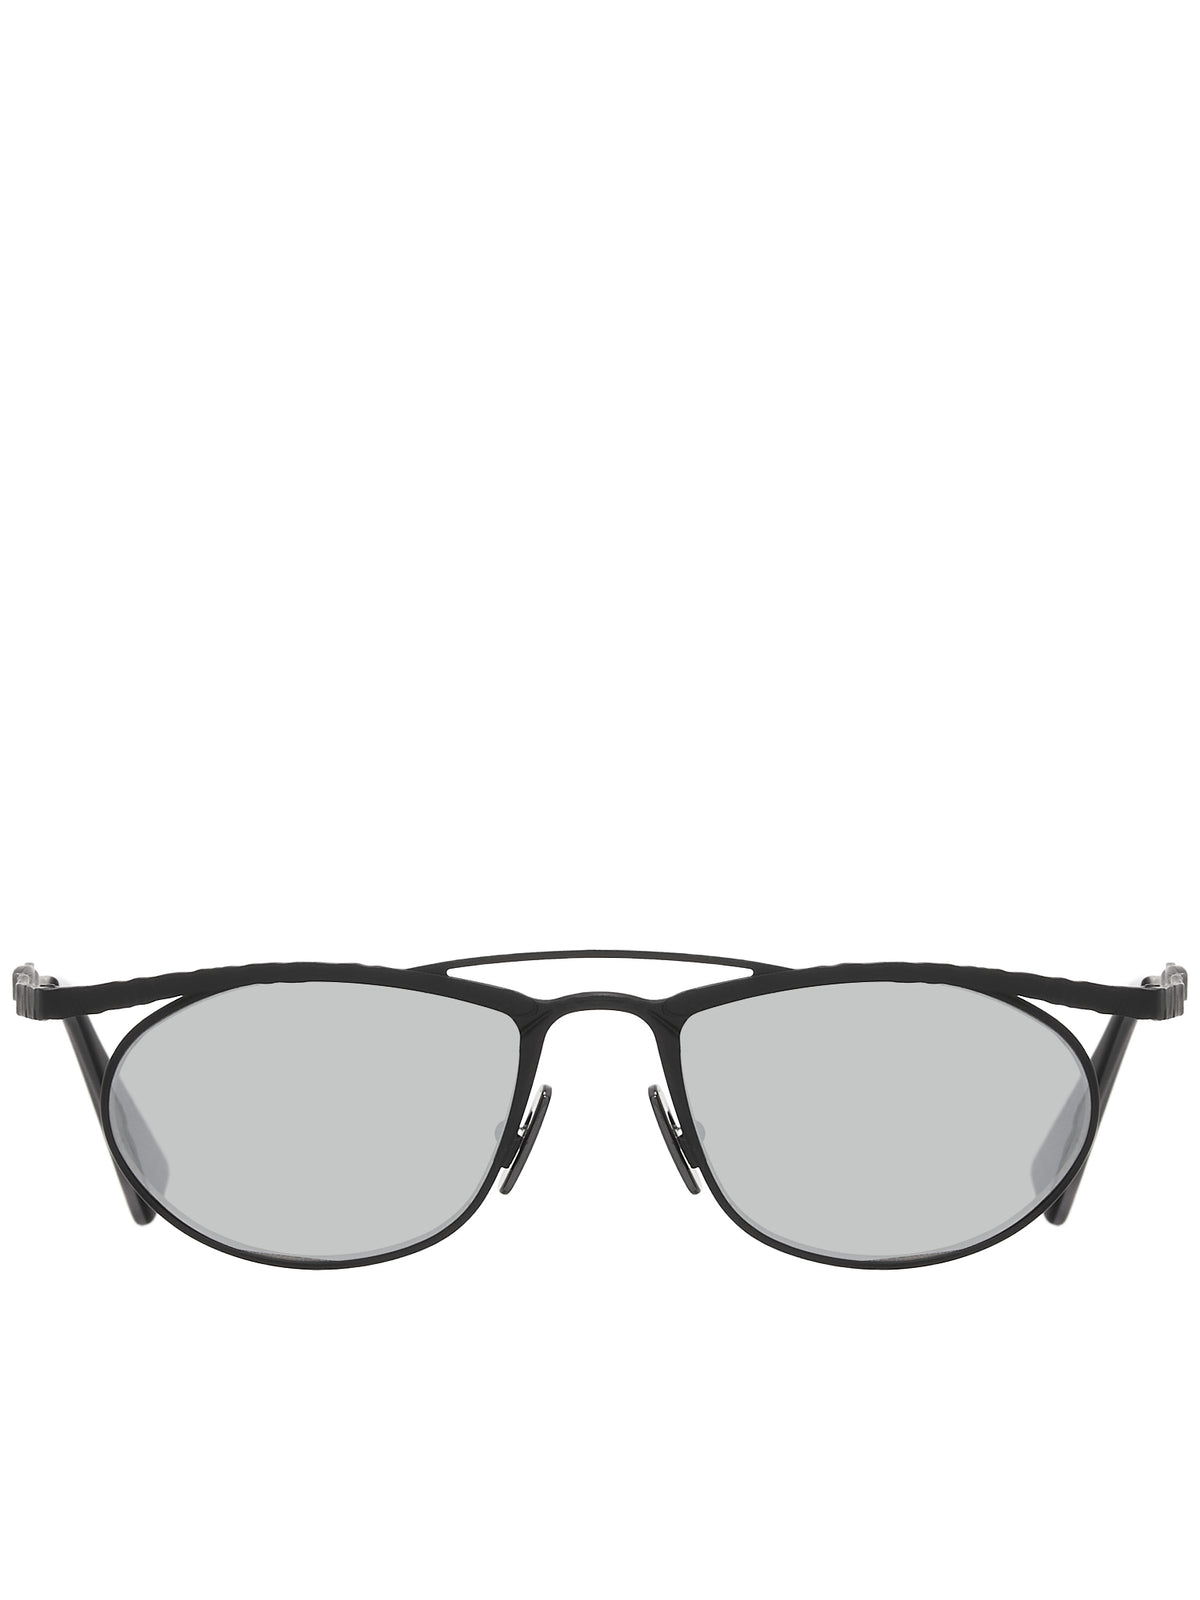 H52 Sunglasses (H52-52-18-BB-SILVER)